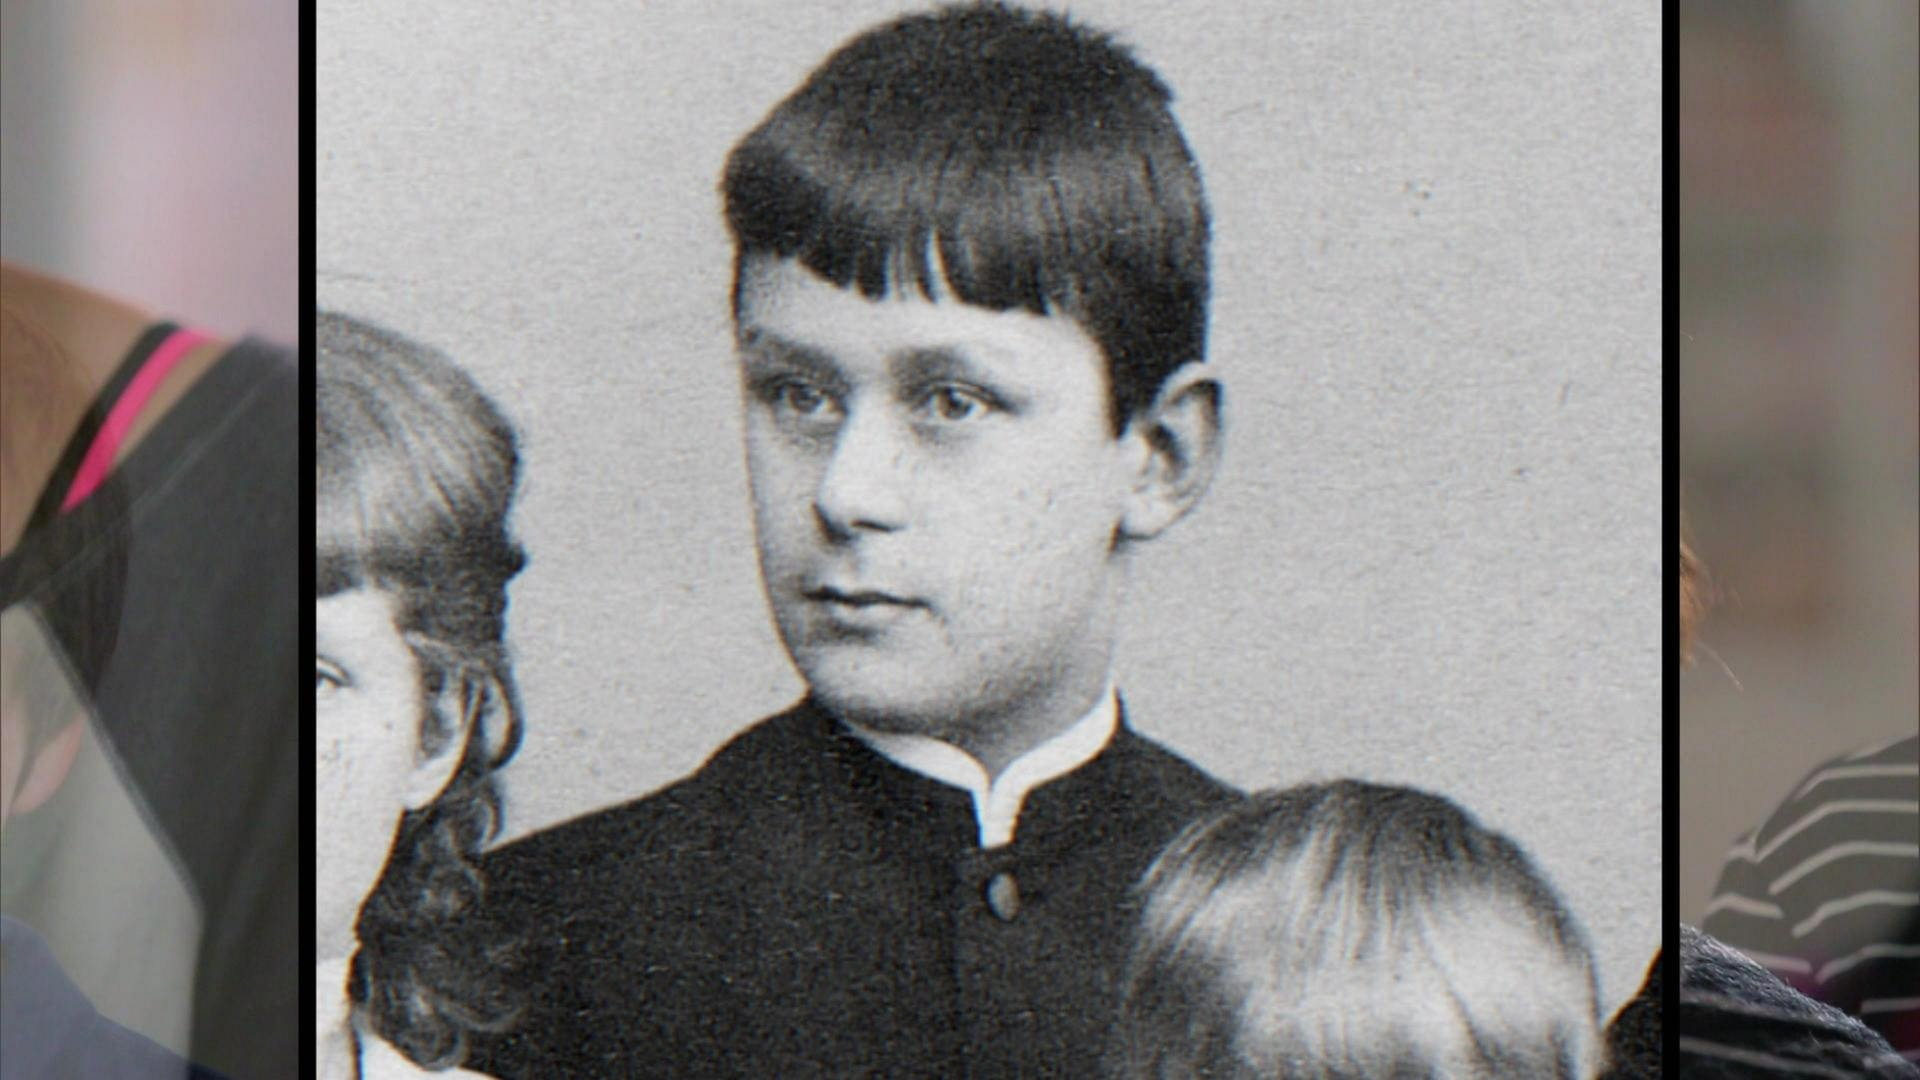 Screenshot aus dem Film: Foto von Thomas Mann als junger Schüler